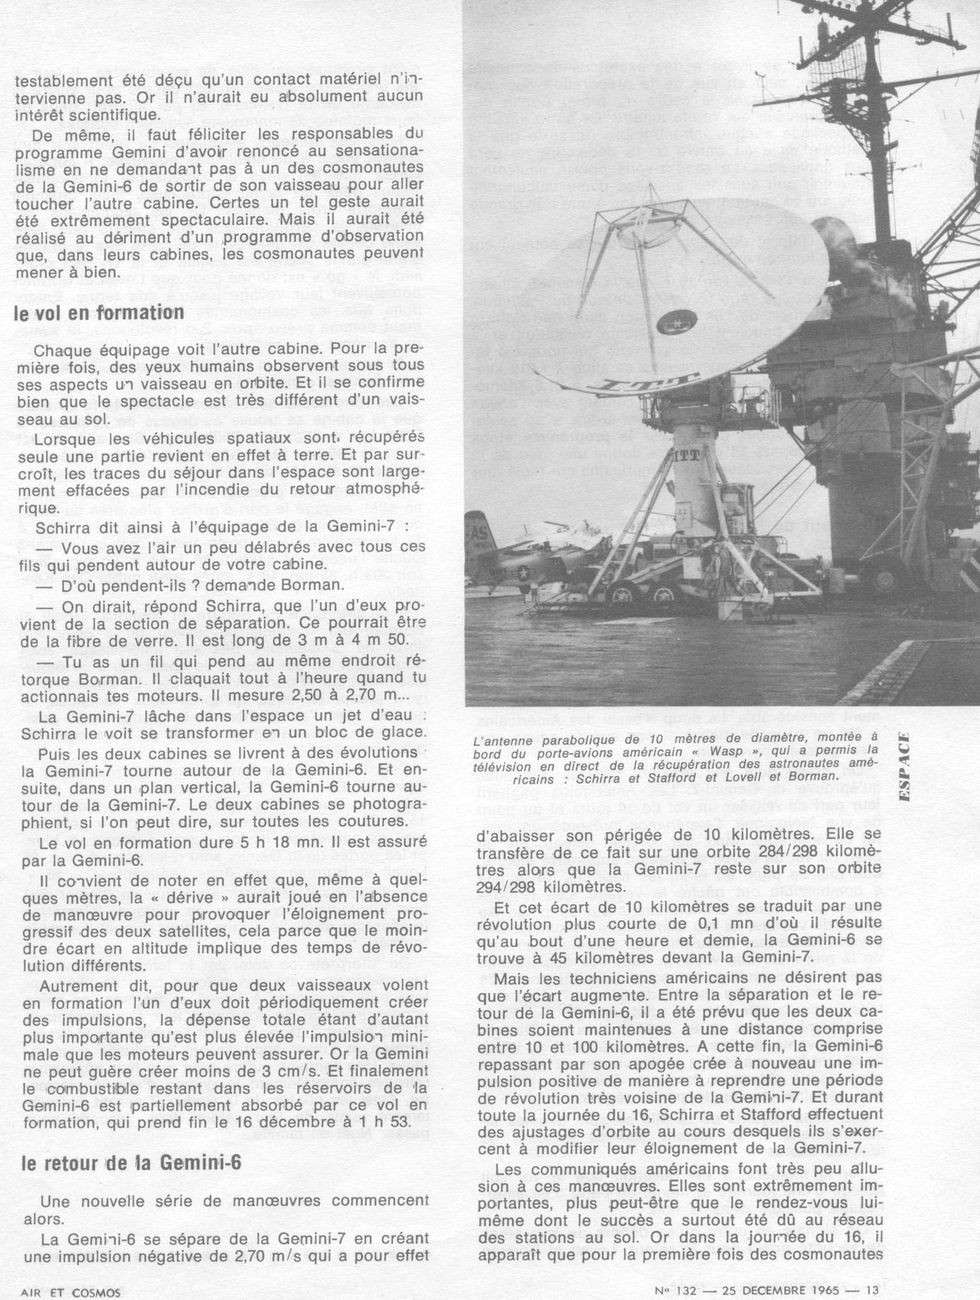 15 décembre 1965 -  lancement de Gemini 6A 65122514